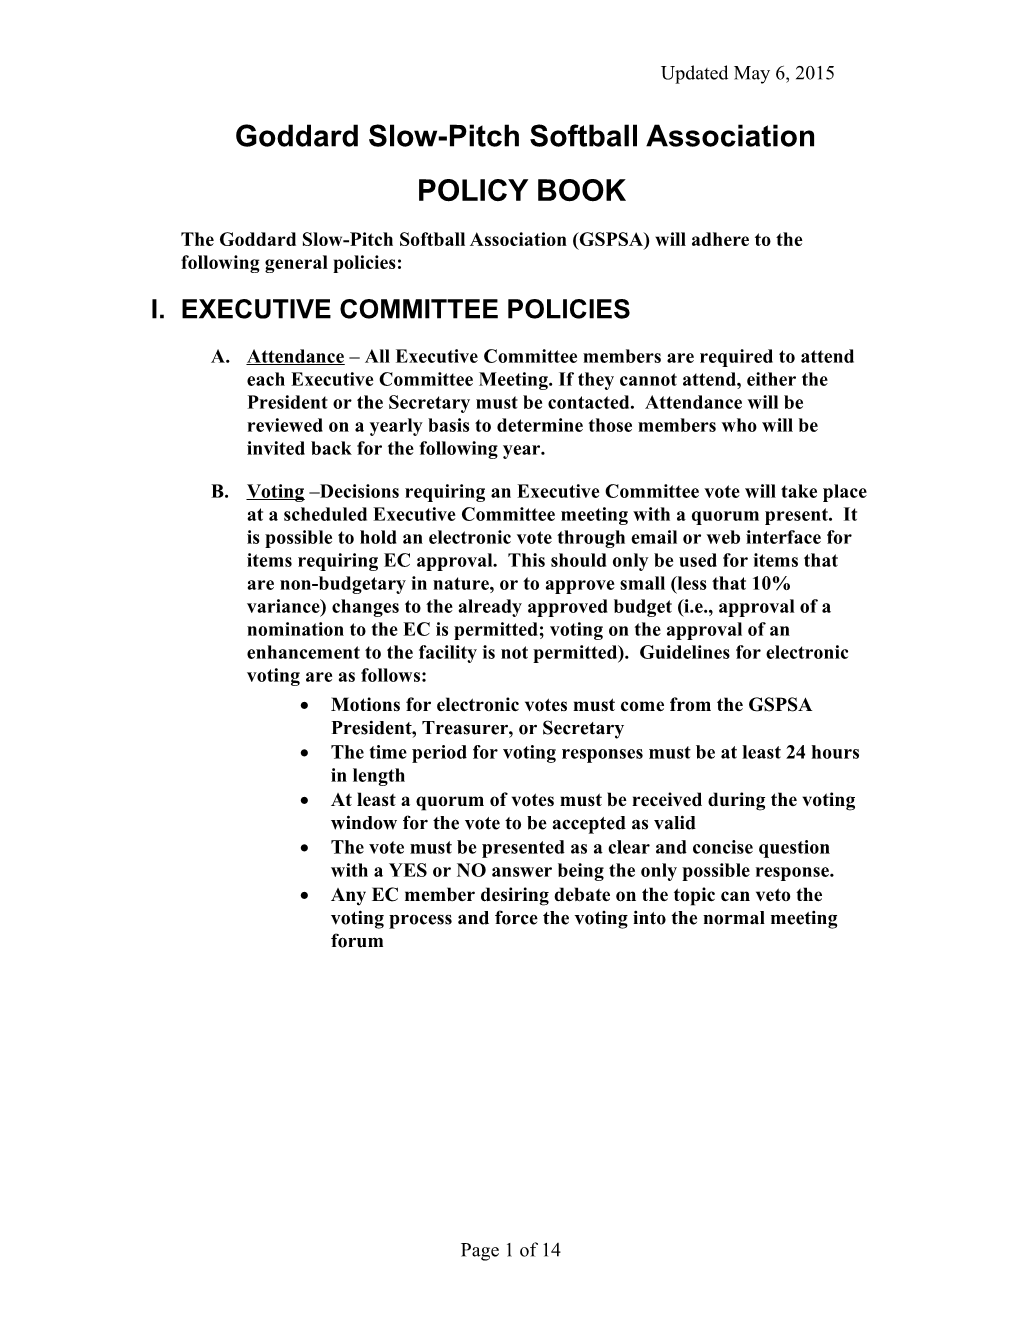 GSPSA Policy Book